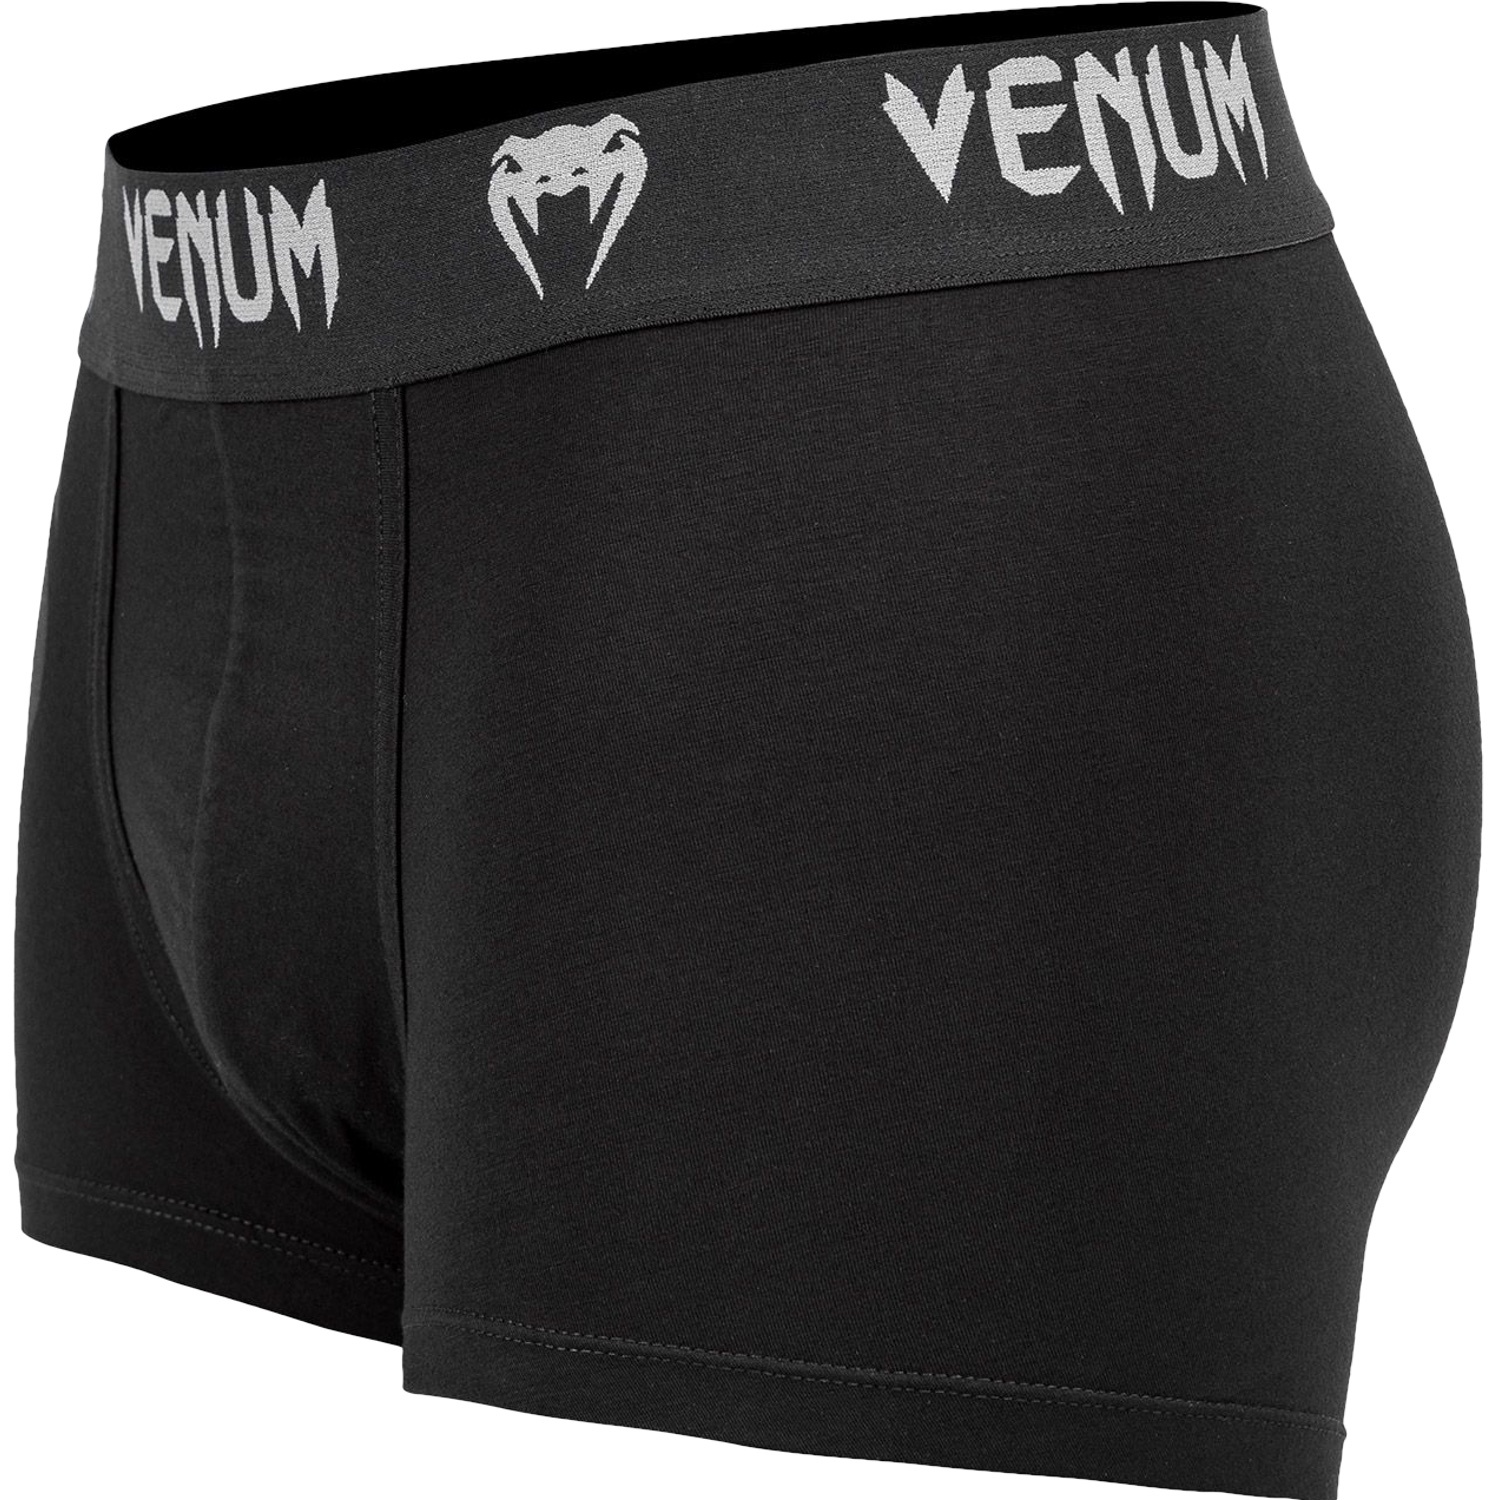 Venum - Venum Giant Underwear - Black/Grey - Military & First Responder  Discounts